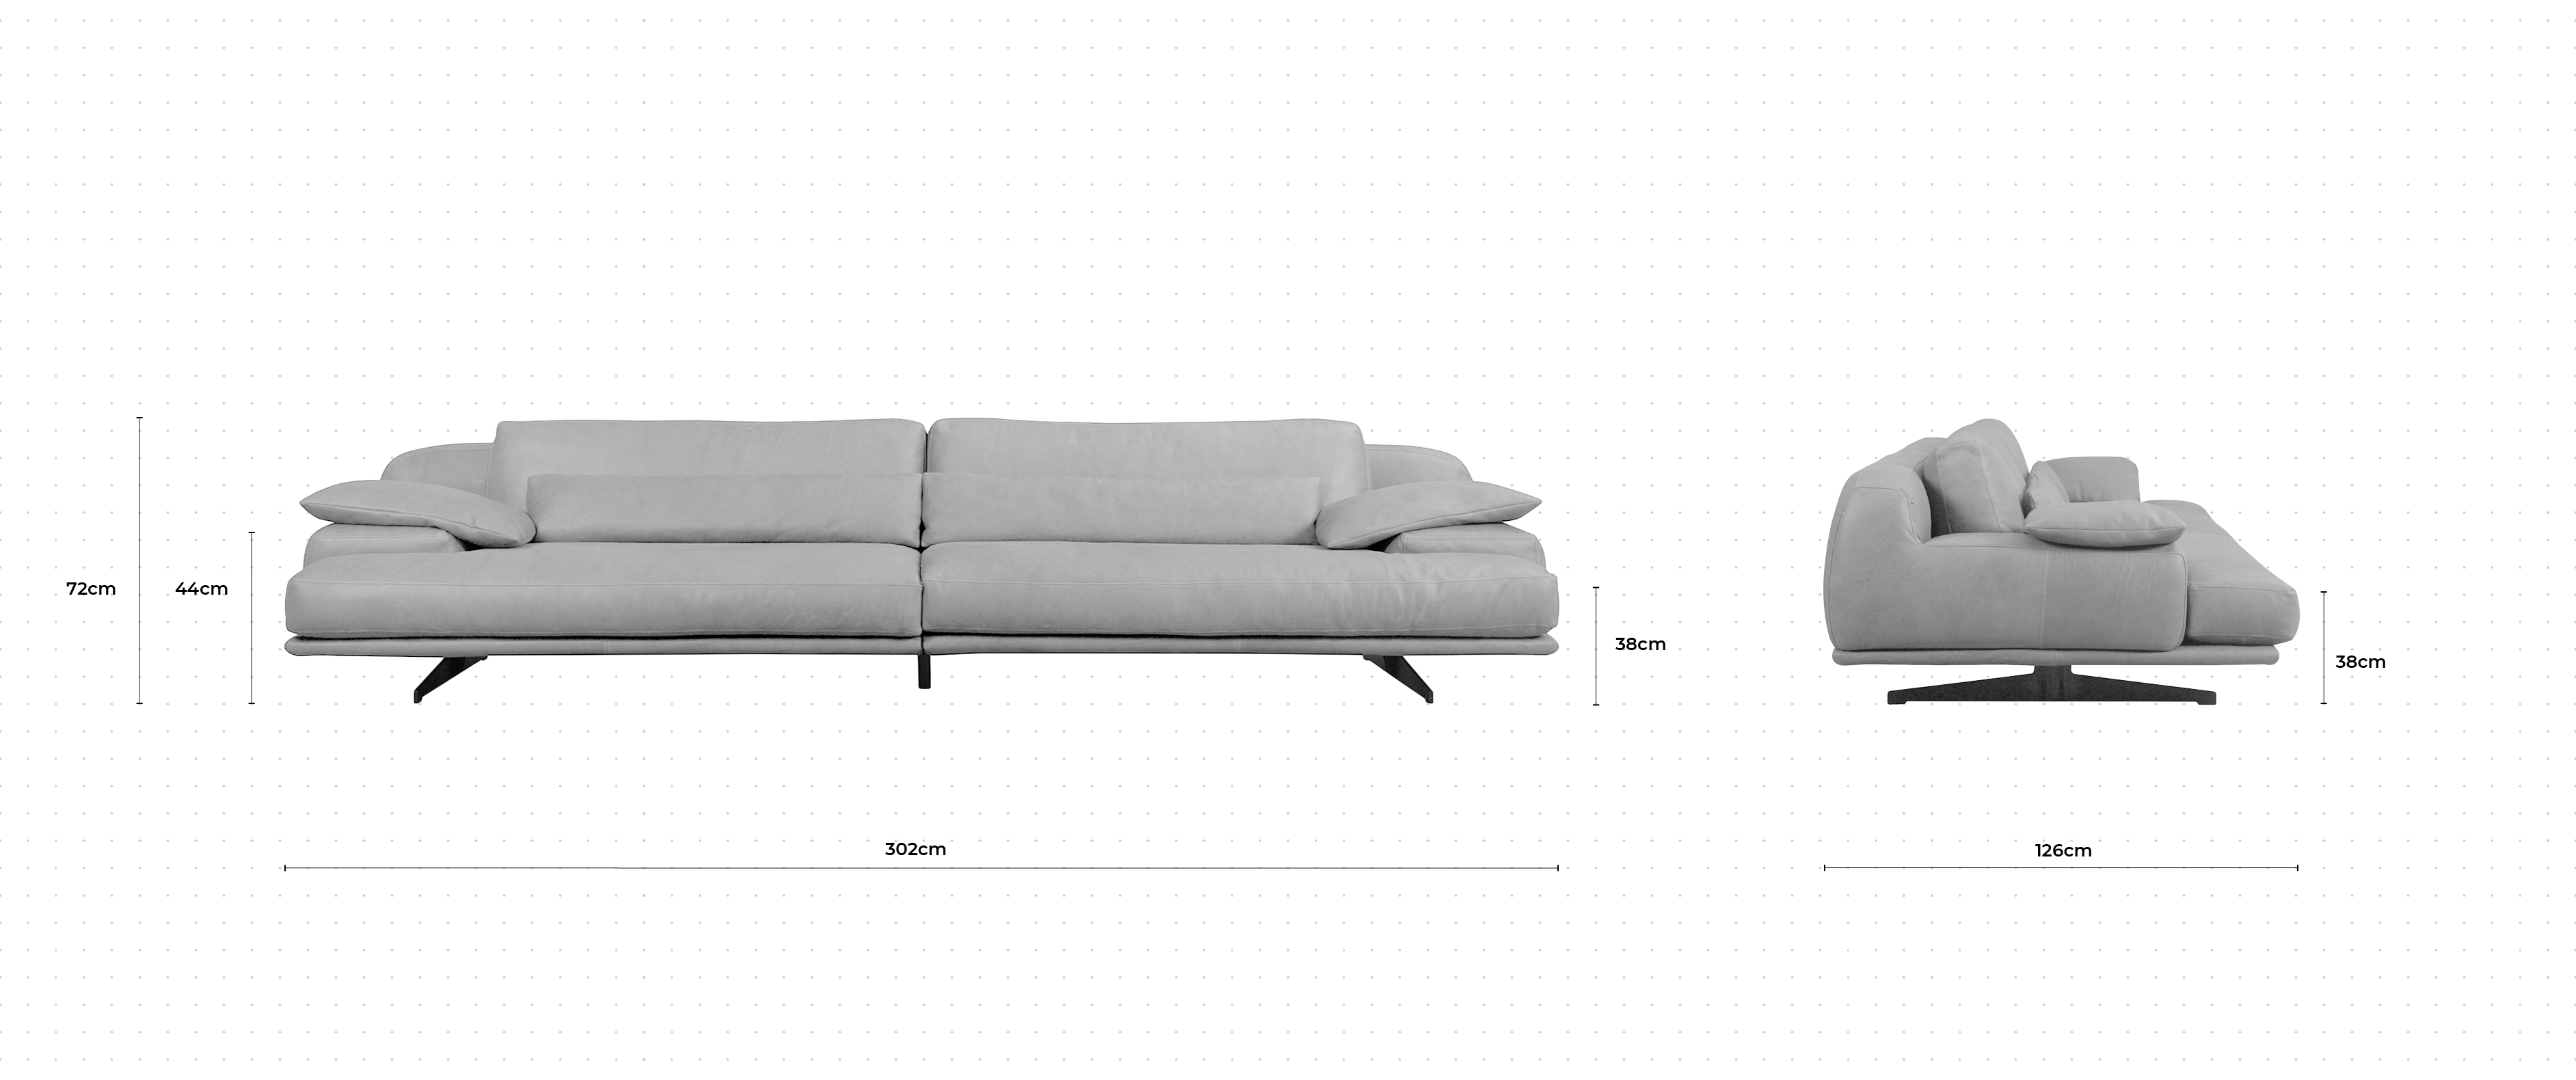 Beluga 4 Seater Sofa dimensions